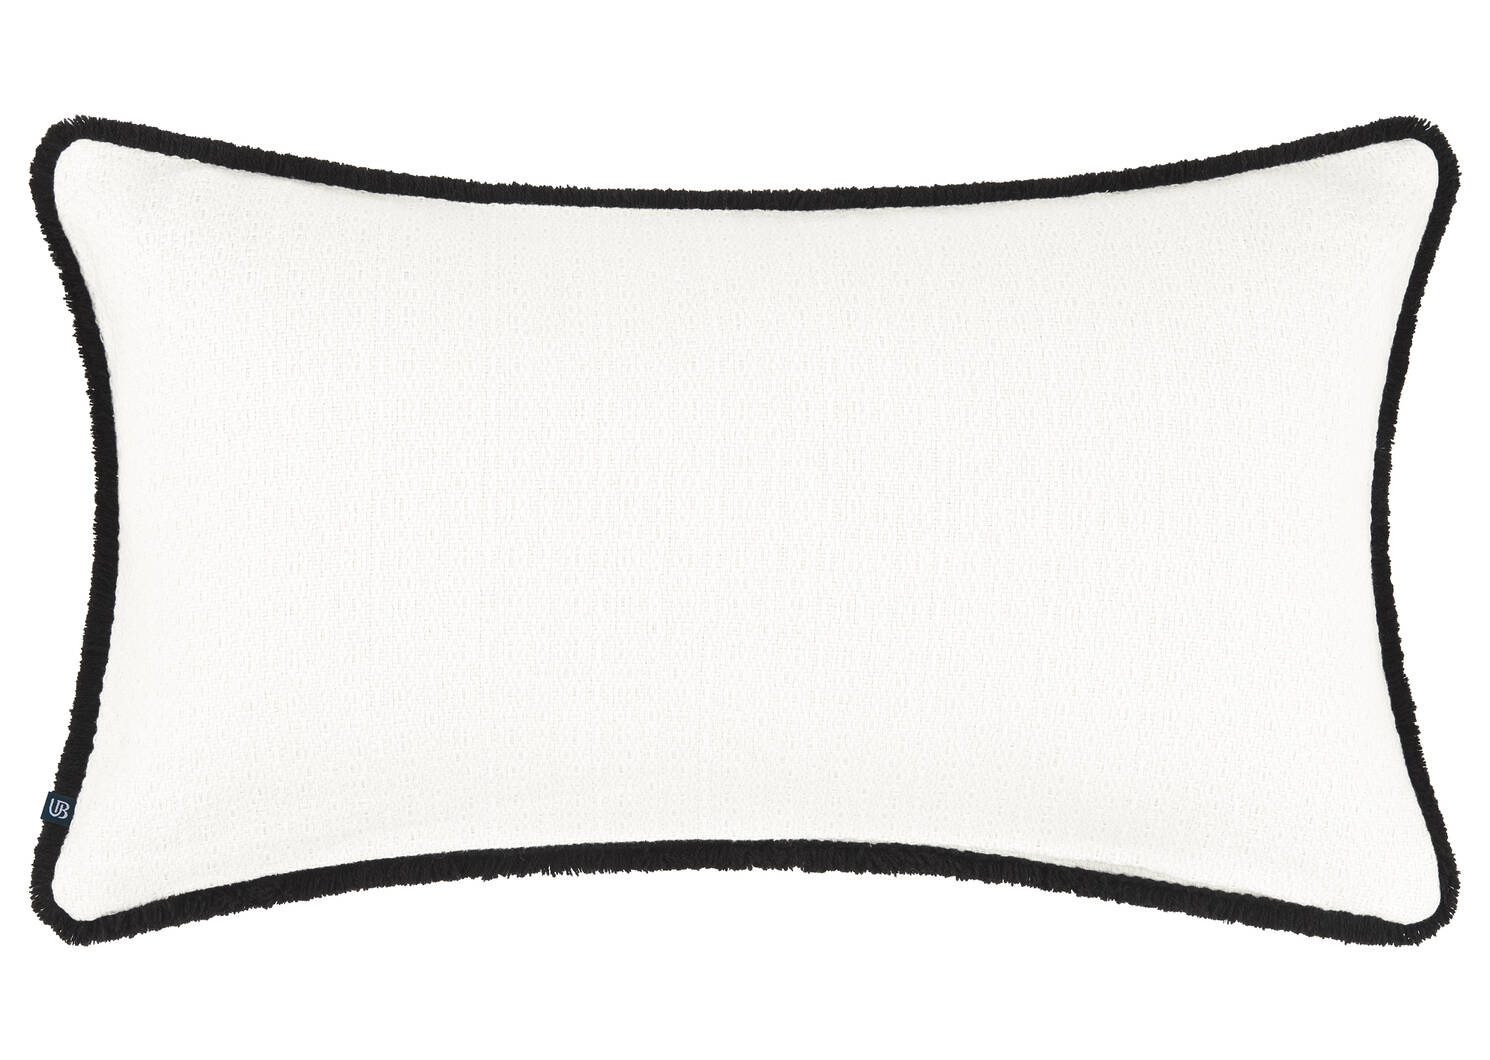 Jolie Cotton Pillow 12x22 Ivory/Black